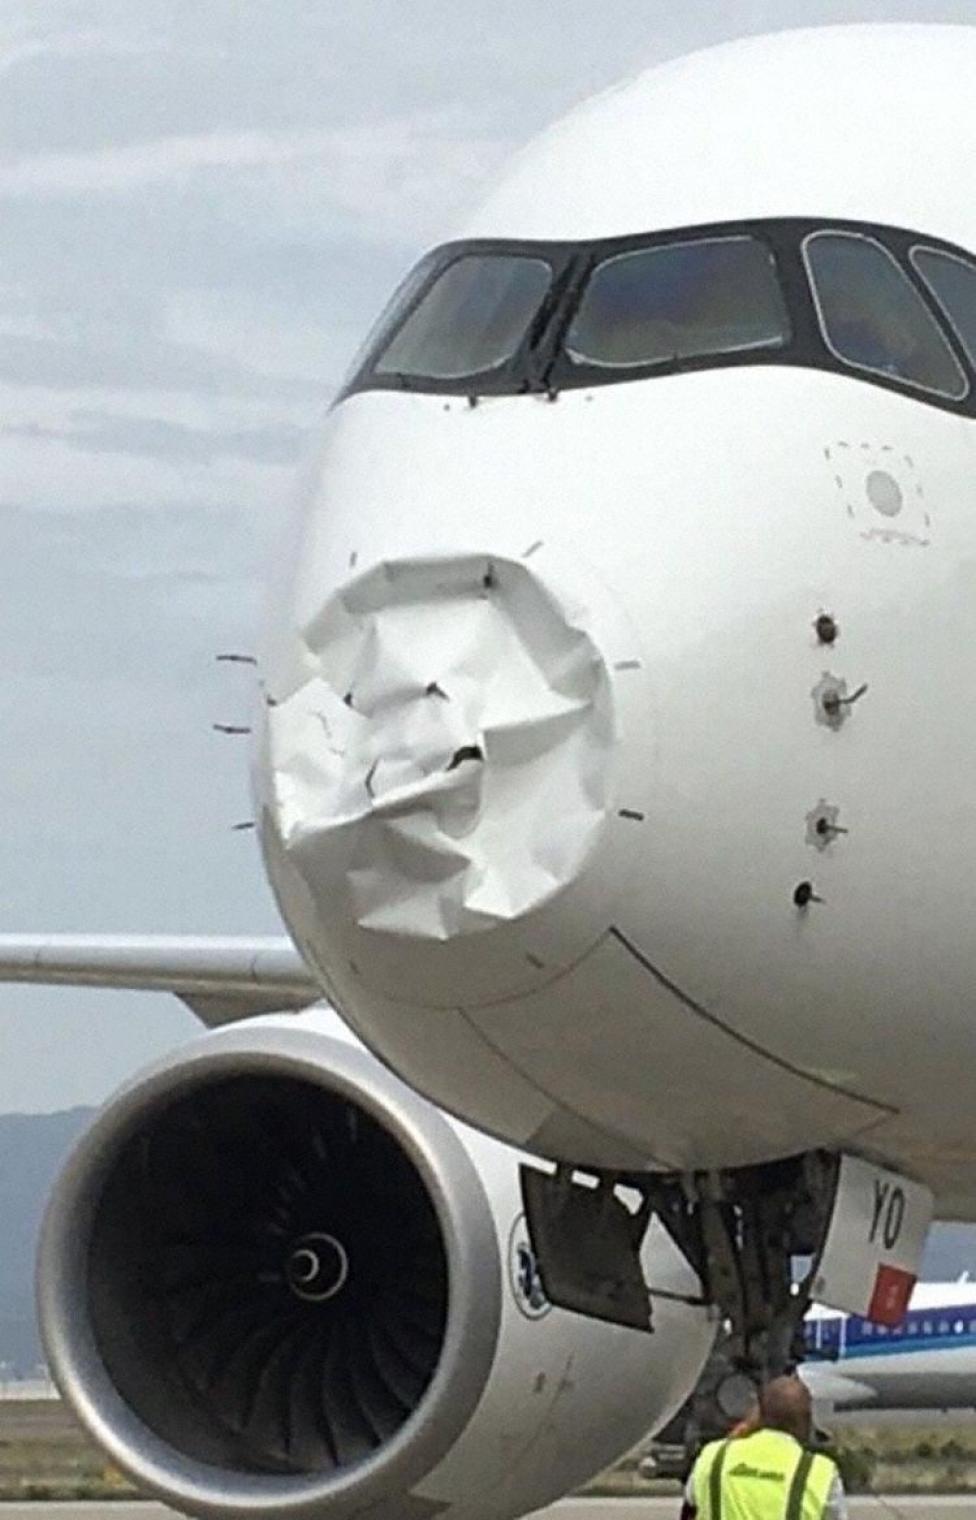 Uszkodzony A359 Air France po bird strike, fot. Aveherald